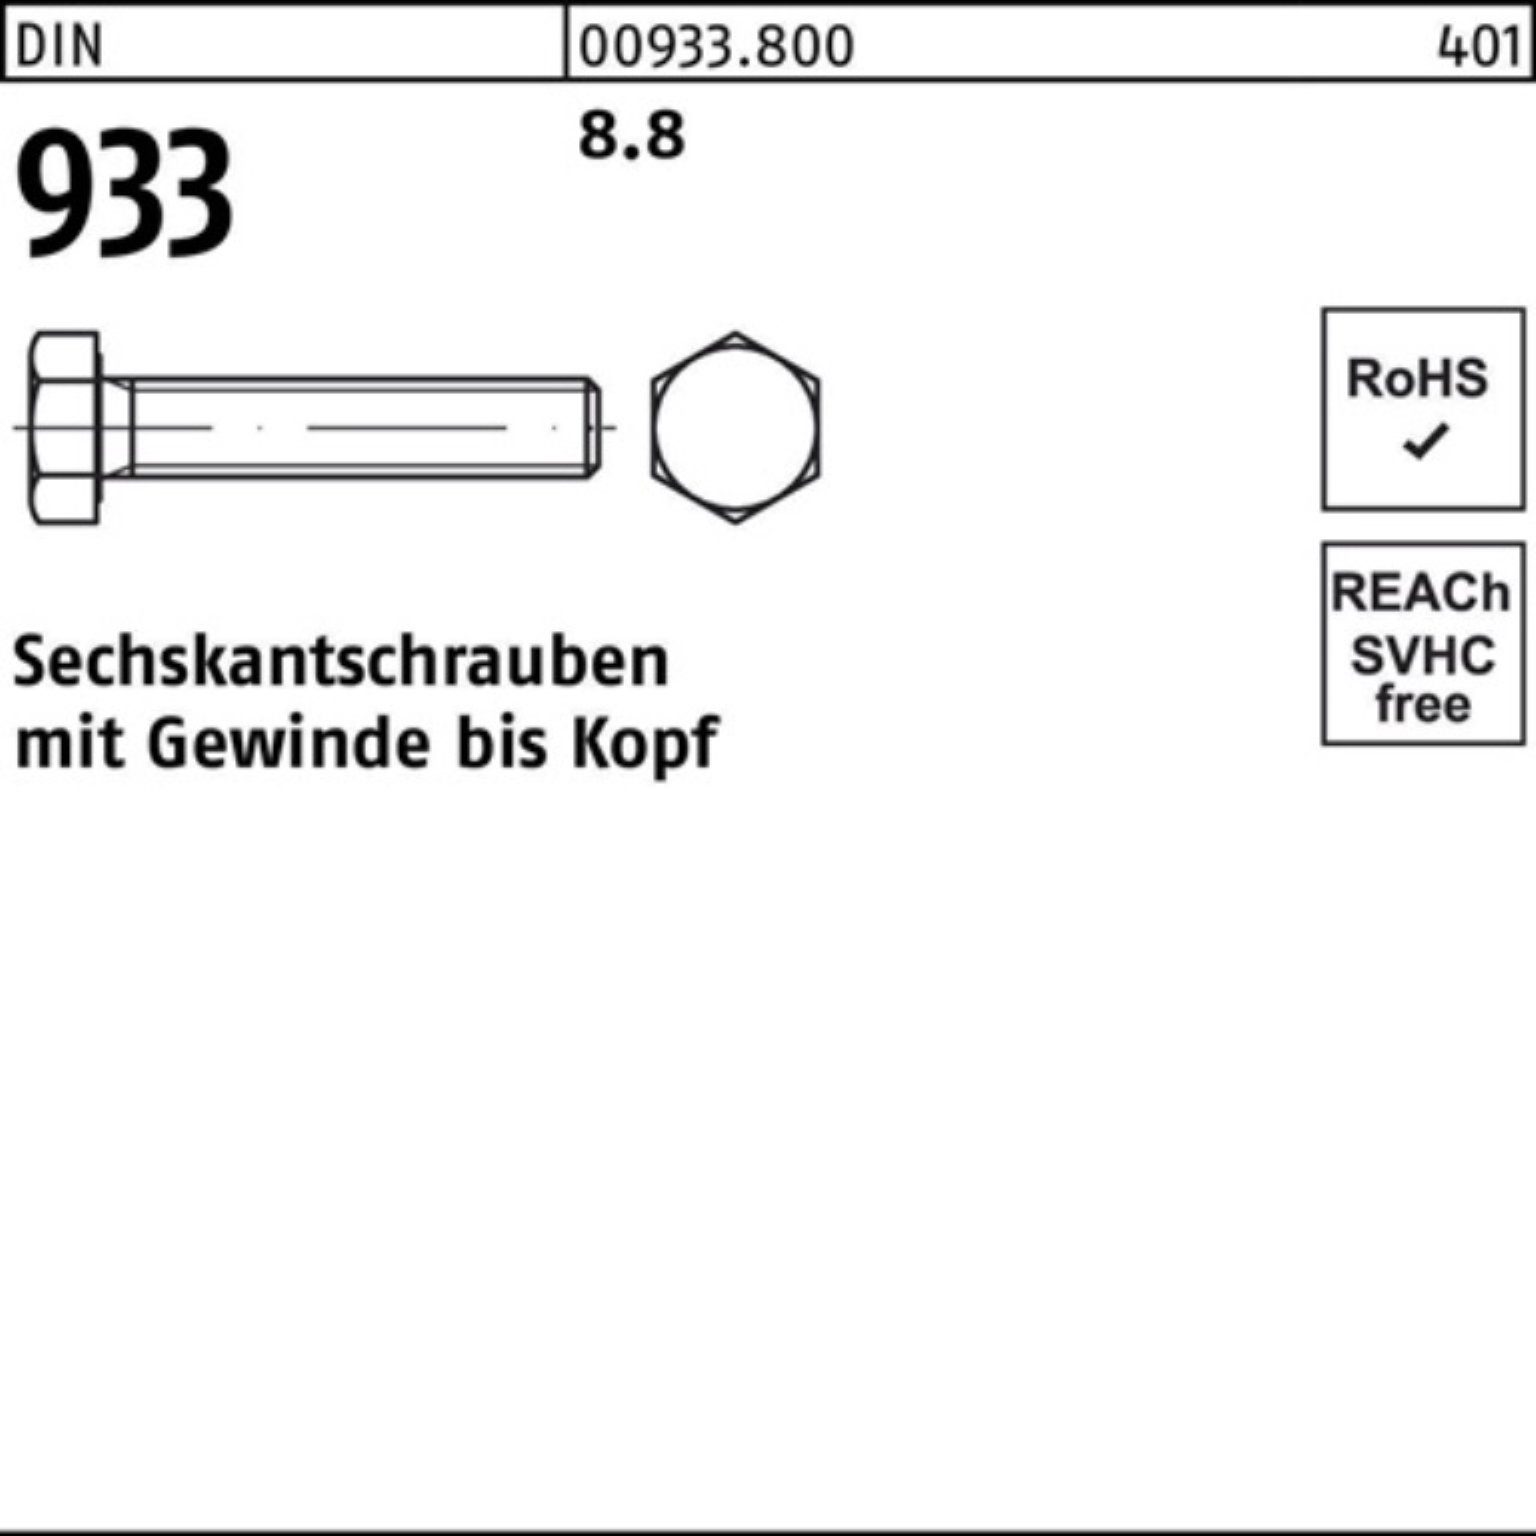 933 DIN Sechskantschraube M10x Reyher 50 Pack 100er 140 933 8.8 Sechskantschraube DIN Stück VG